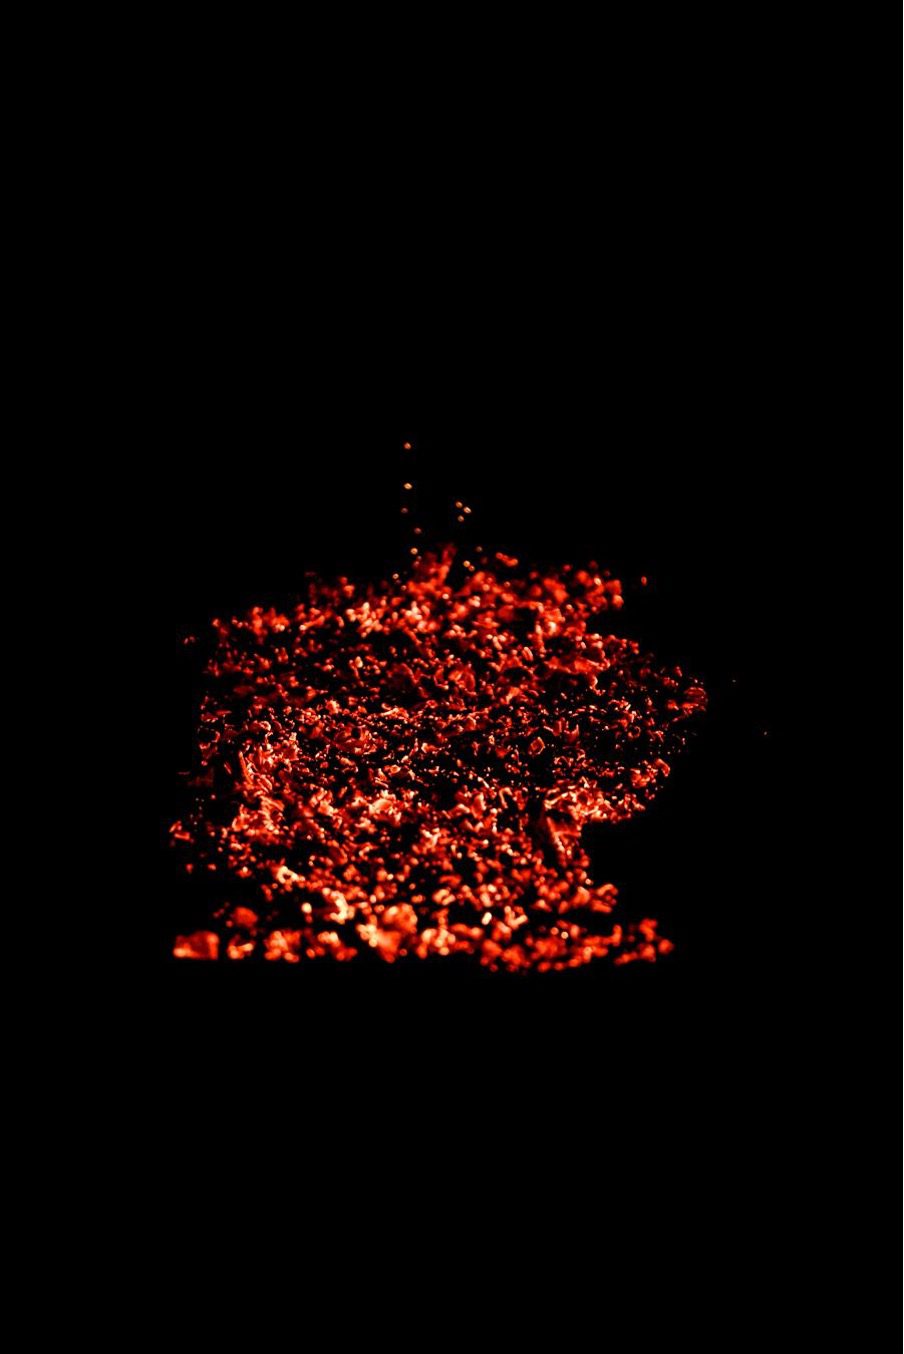 The Path of hot coals